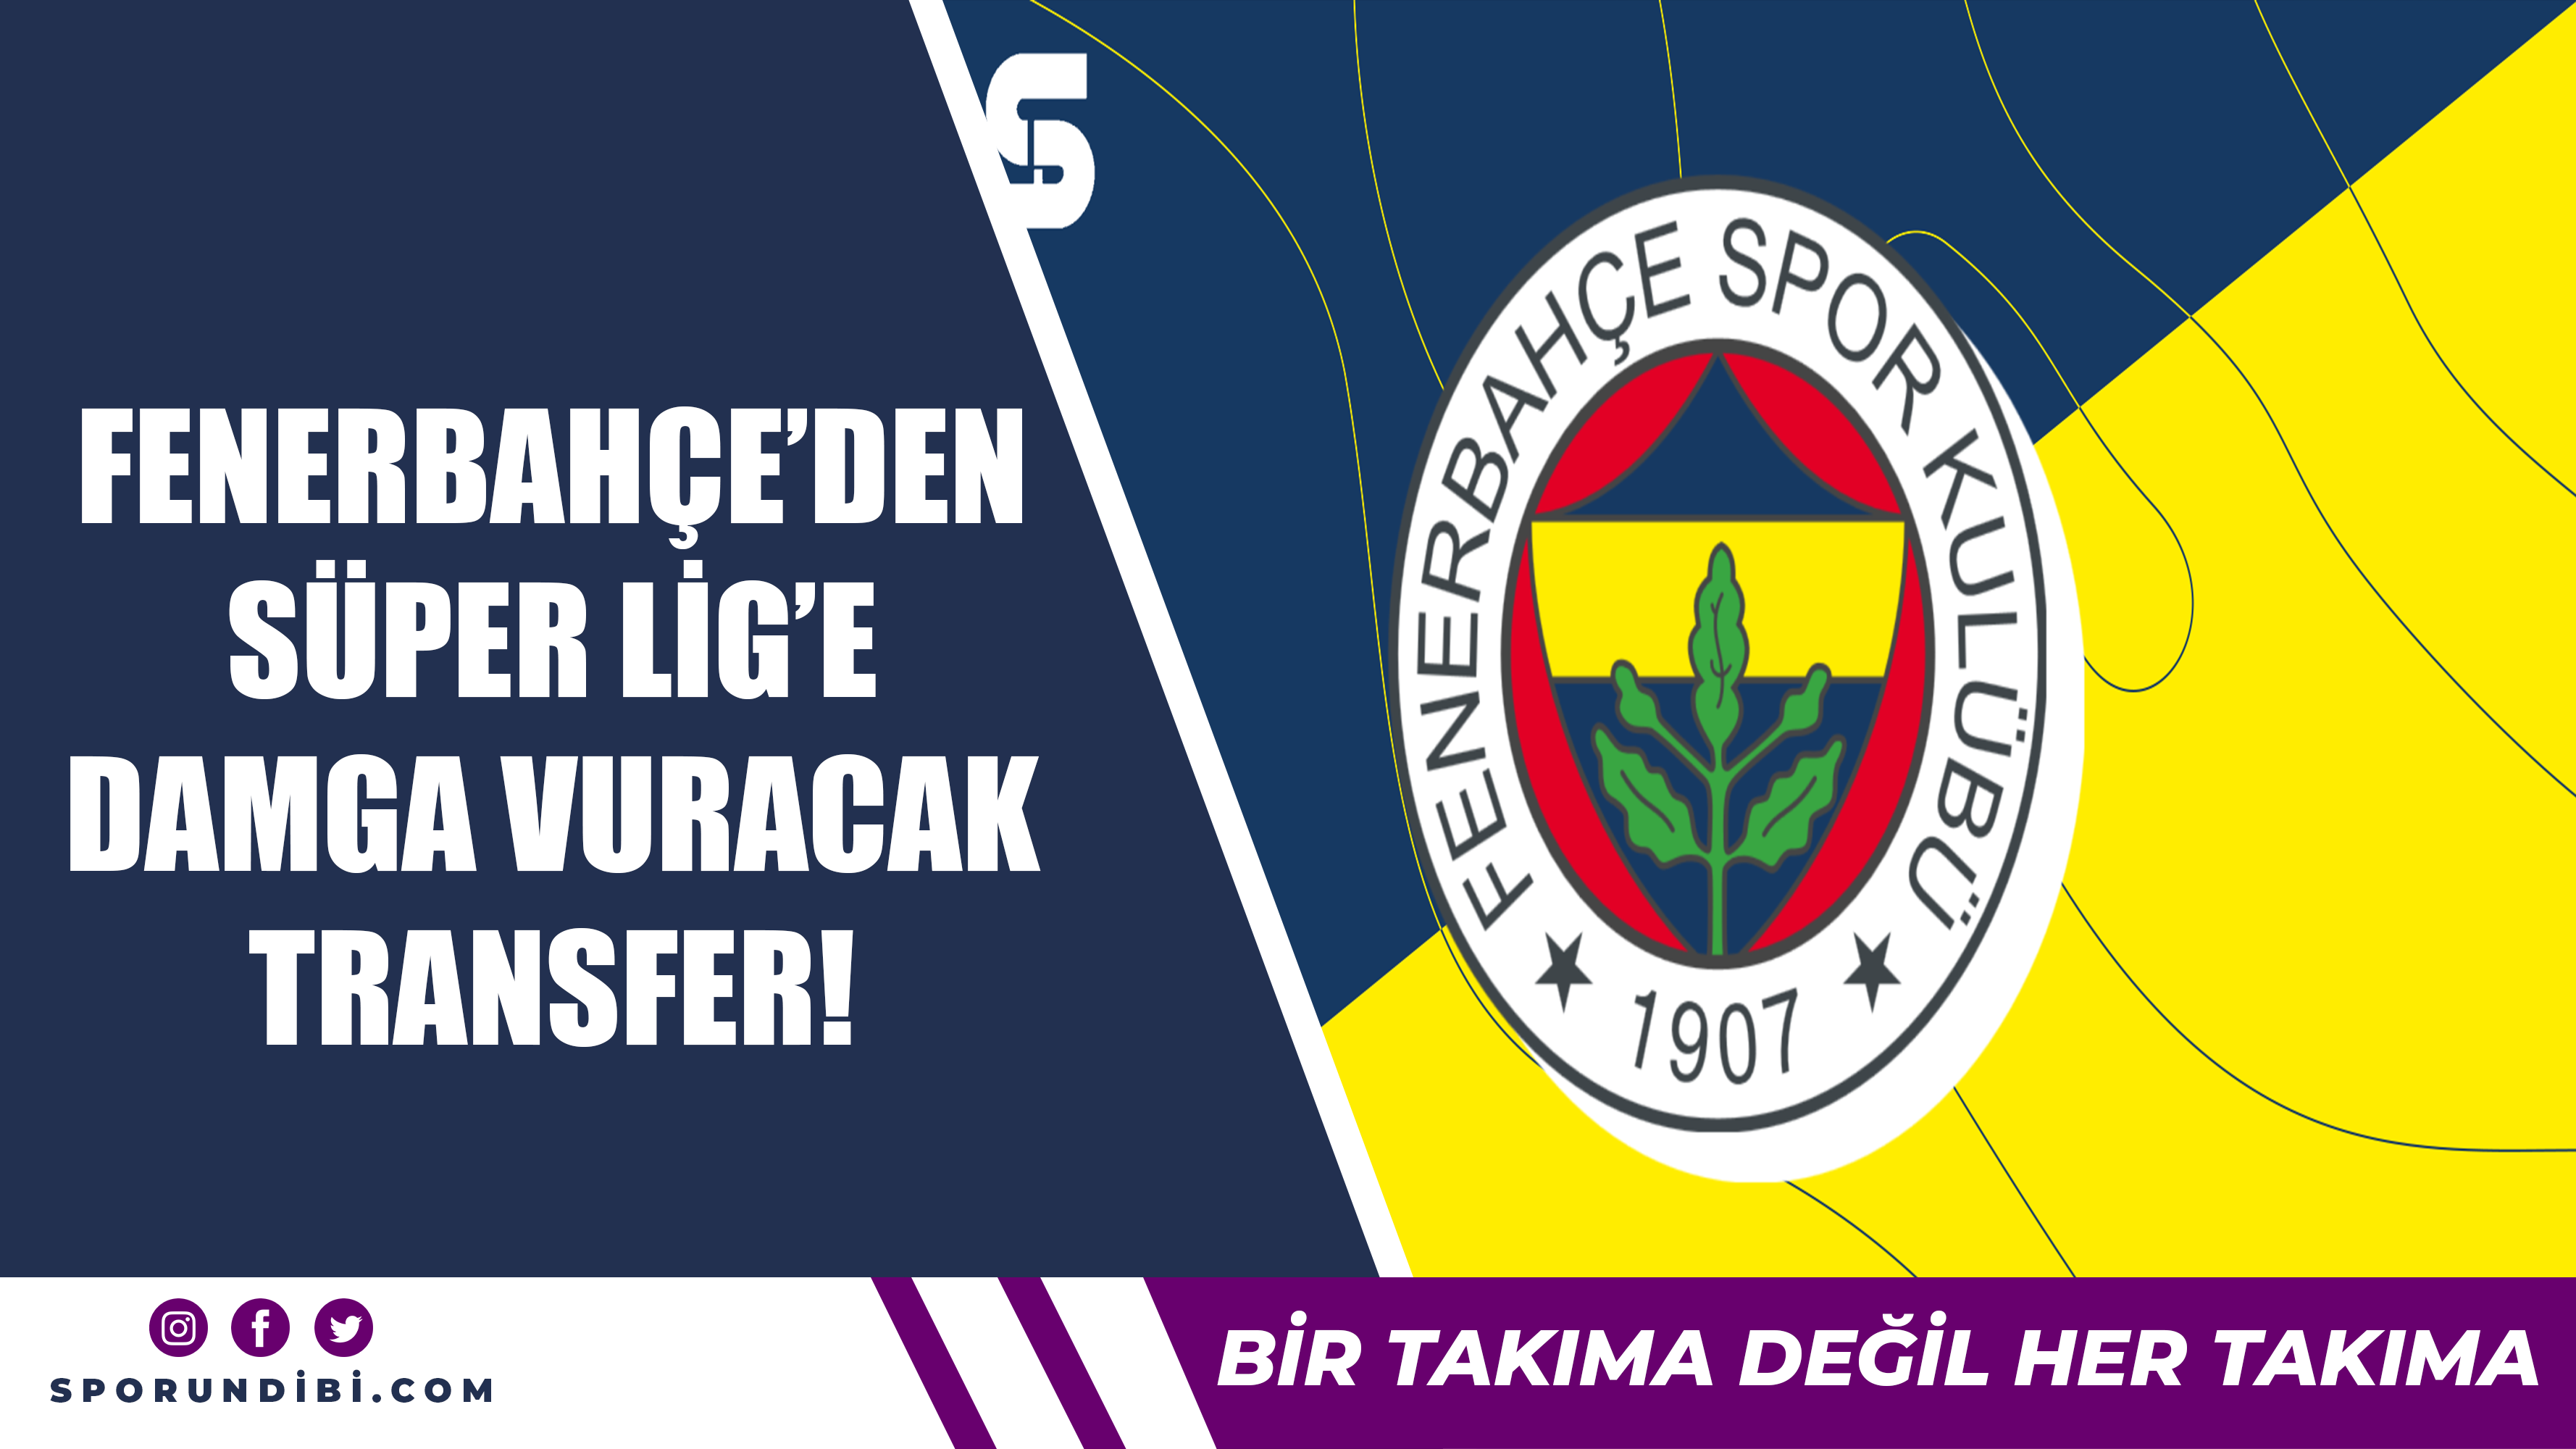 Fenerbahçe'den Süper Lig'e damga vuracak transfer!